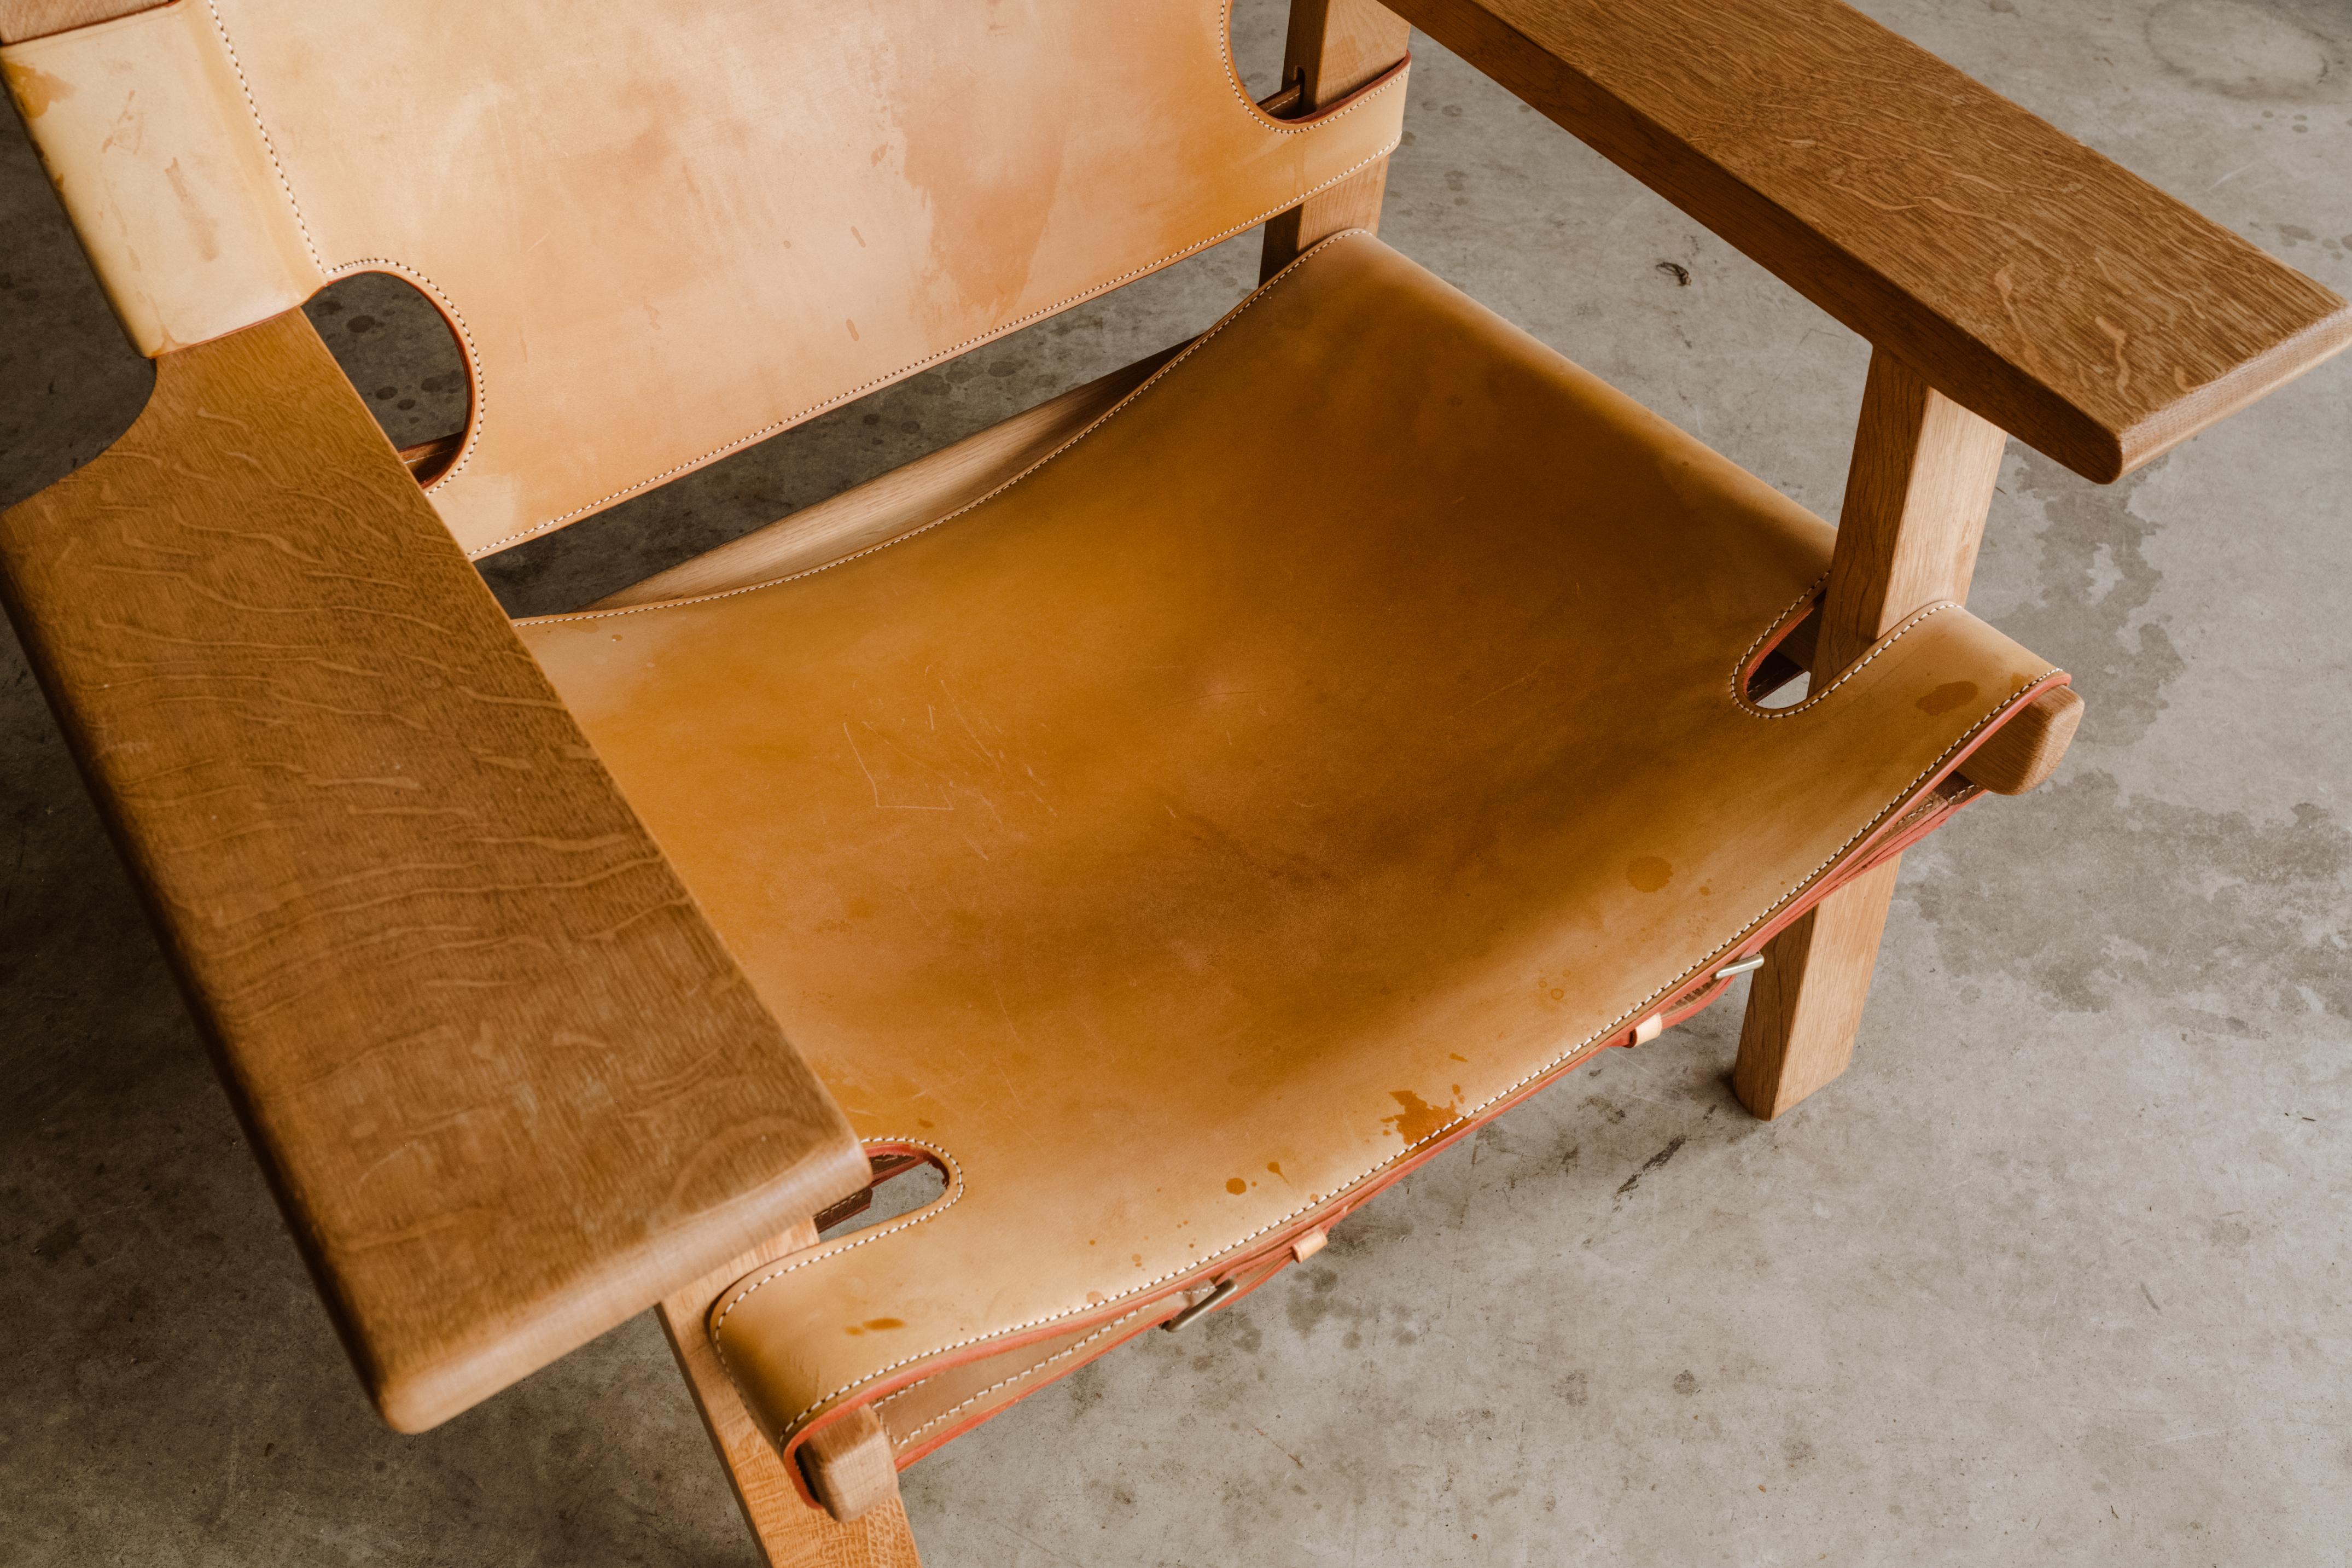 Spanischer Vintage-Stuhl von Børge Mogensen aus Eiche und dickem cognacfarbenem Leder. Produziert von Fredericia Furniture, Dänemark. Leichte Abnutzung und Patina.

Wir haben nicht die Zeit, zu jedem unserer Stücke eine ausführliche Beschreibung zu